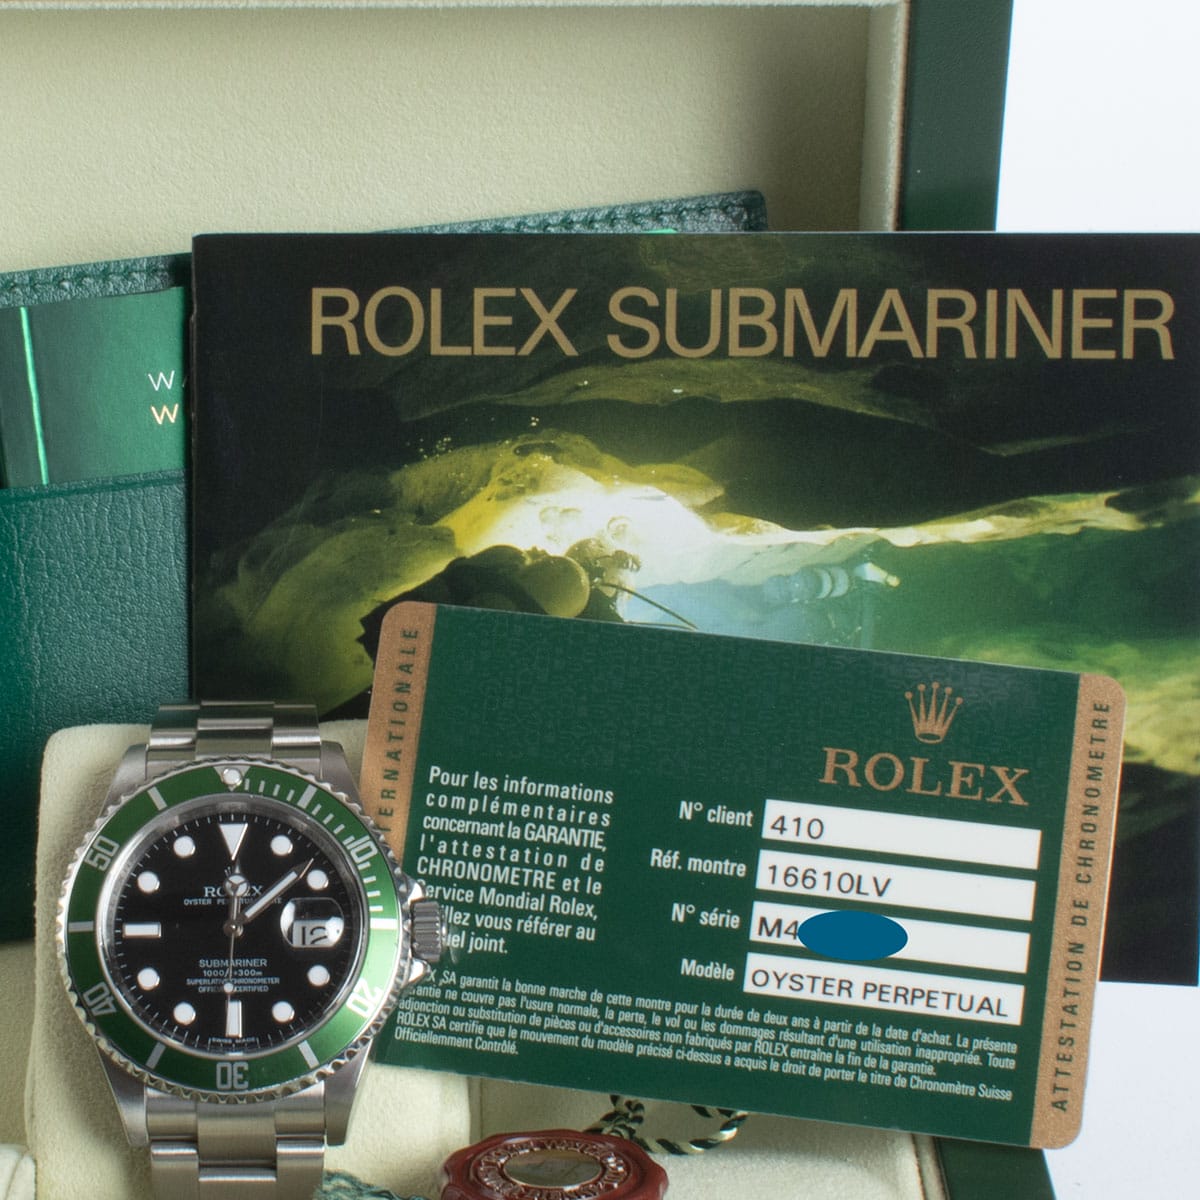 View in Box of Submariner Date 'Anniversary' Kermit